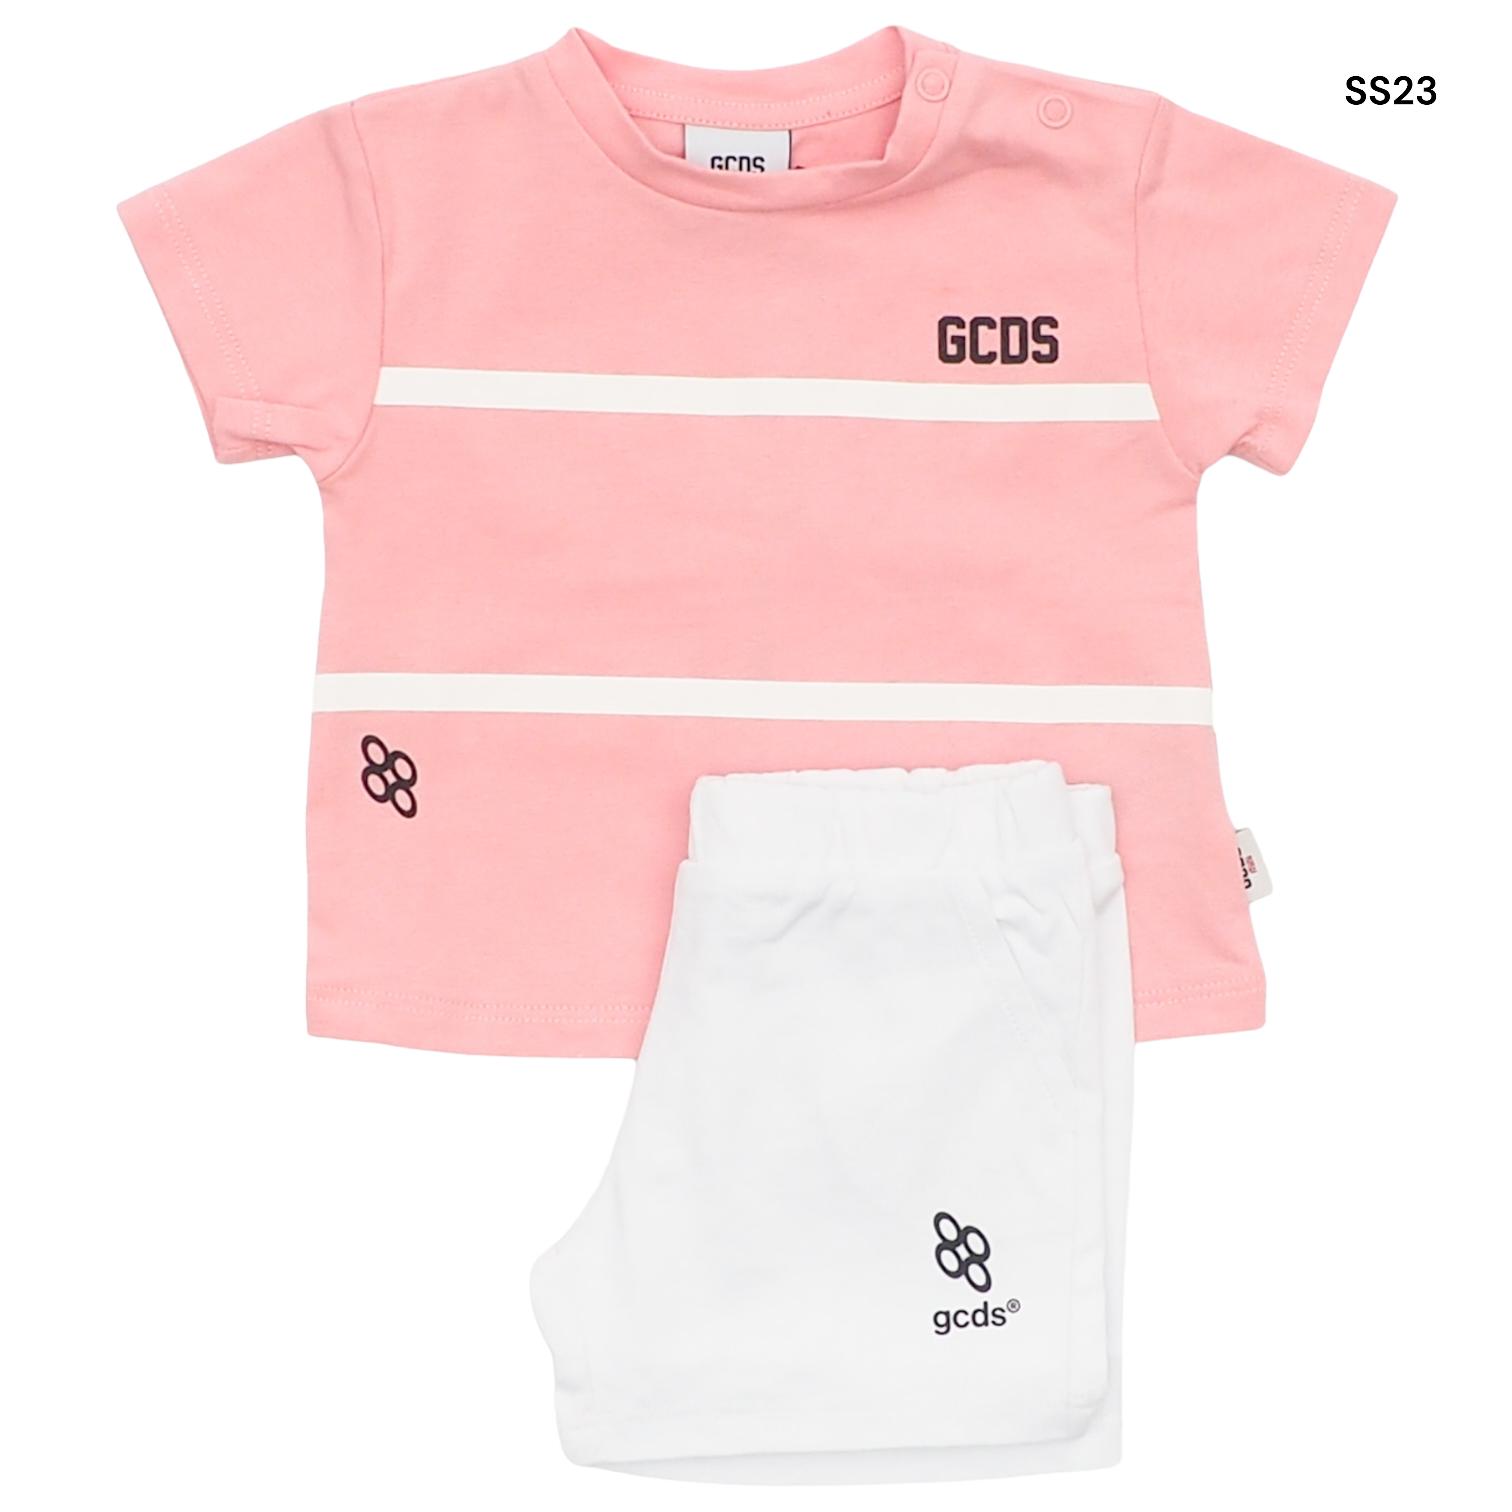 Completo t-shirt rosa + short bianco per neonata